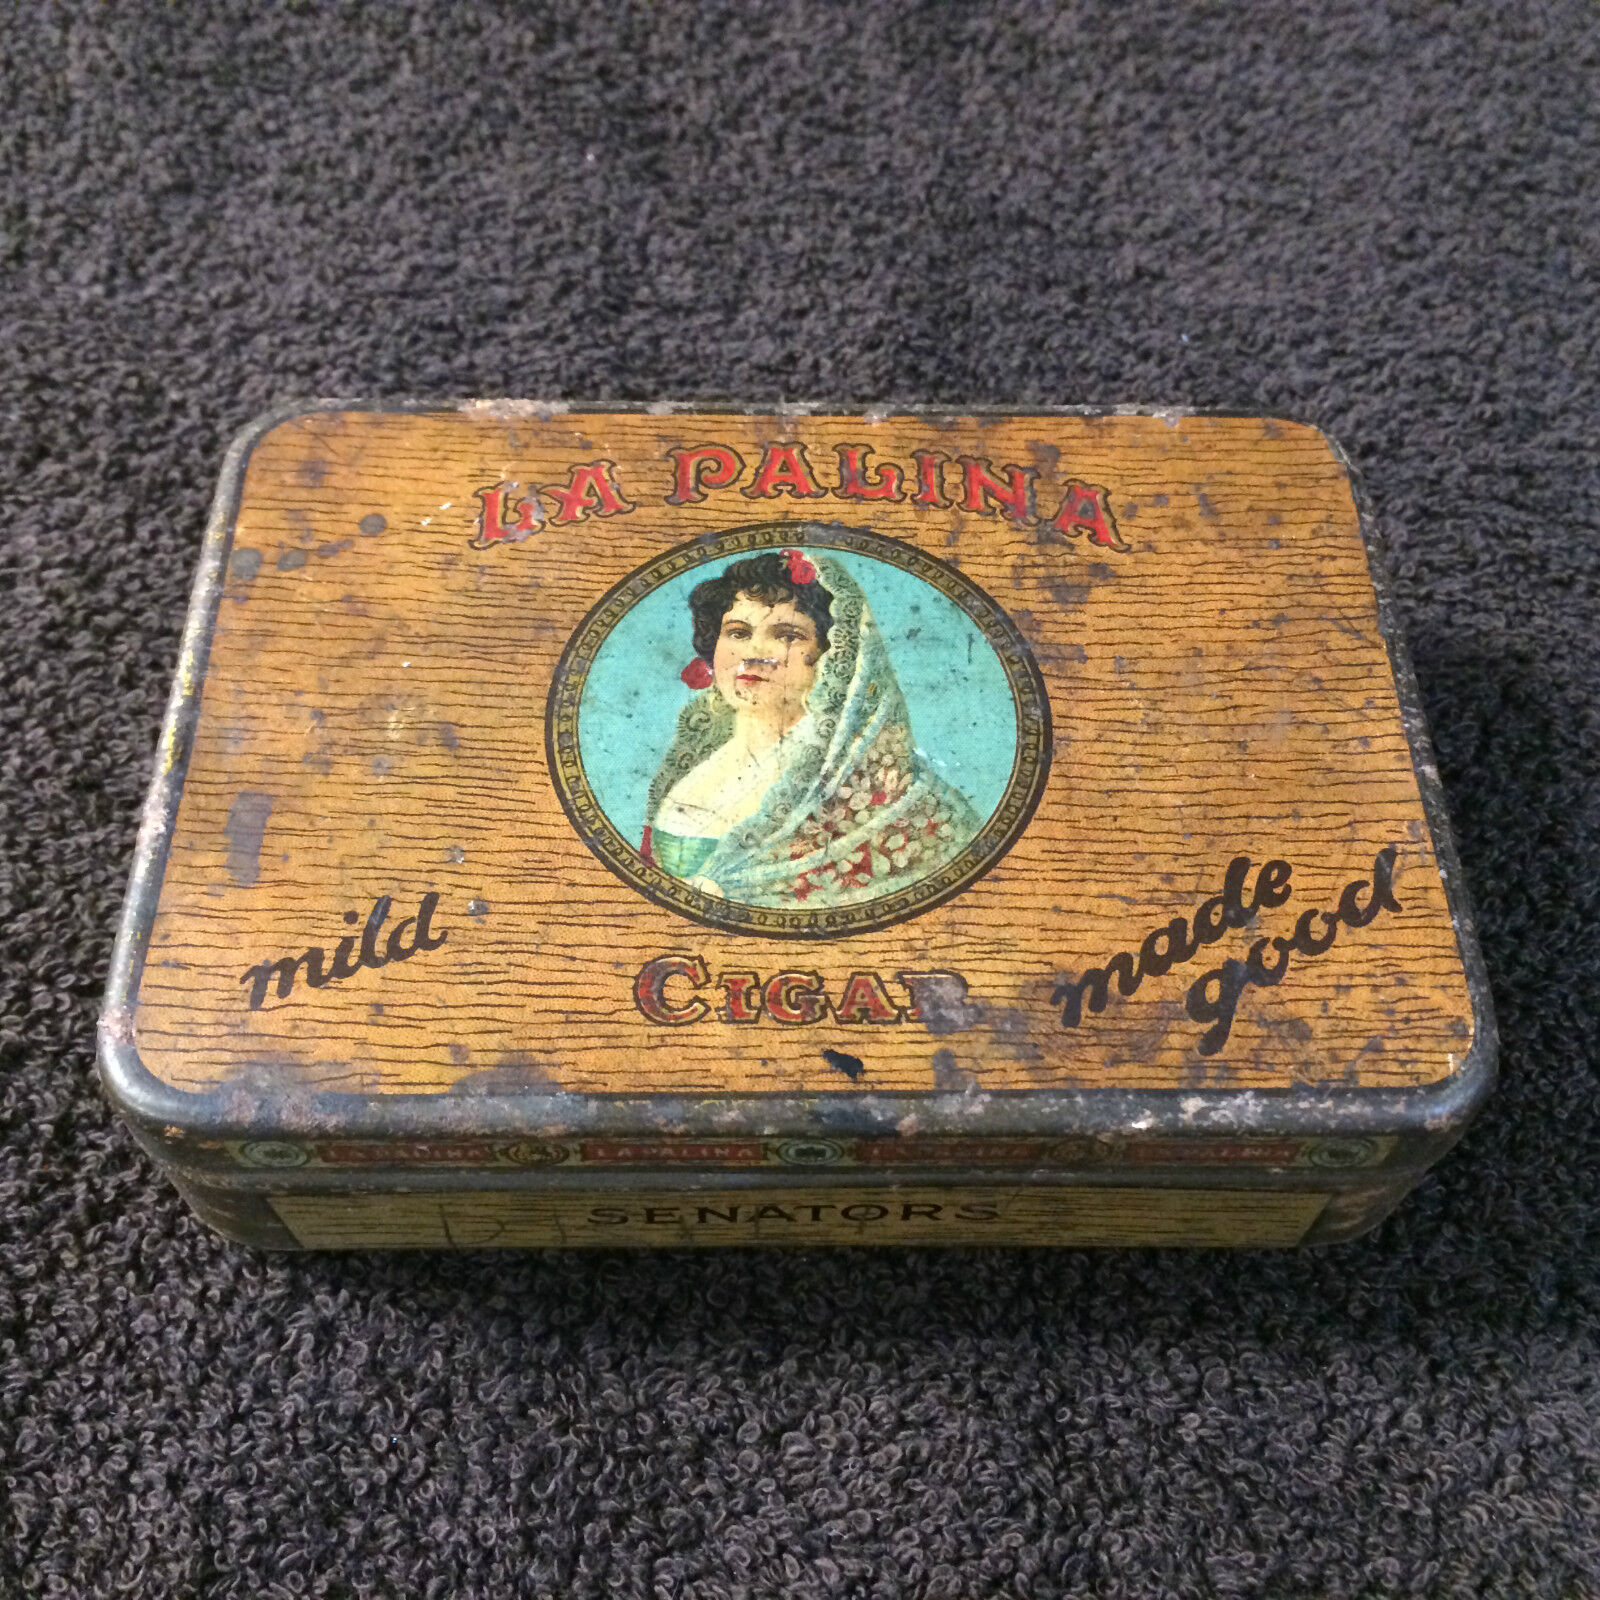 Vintage La Palina Cigar tin. Senators. Used